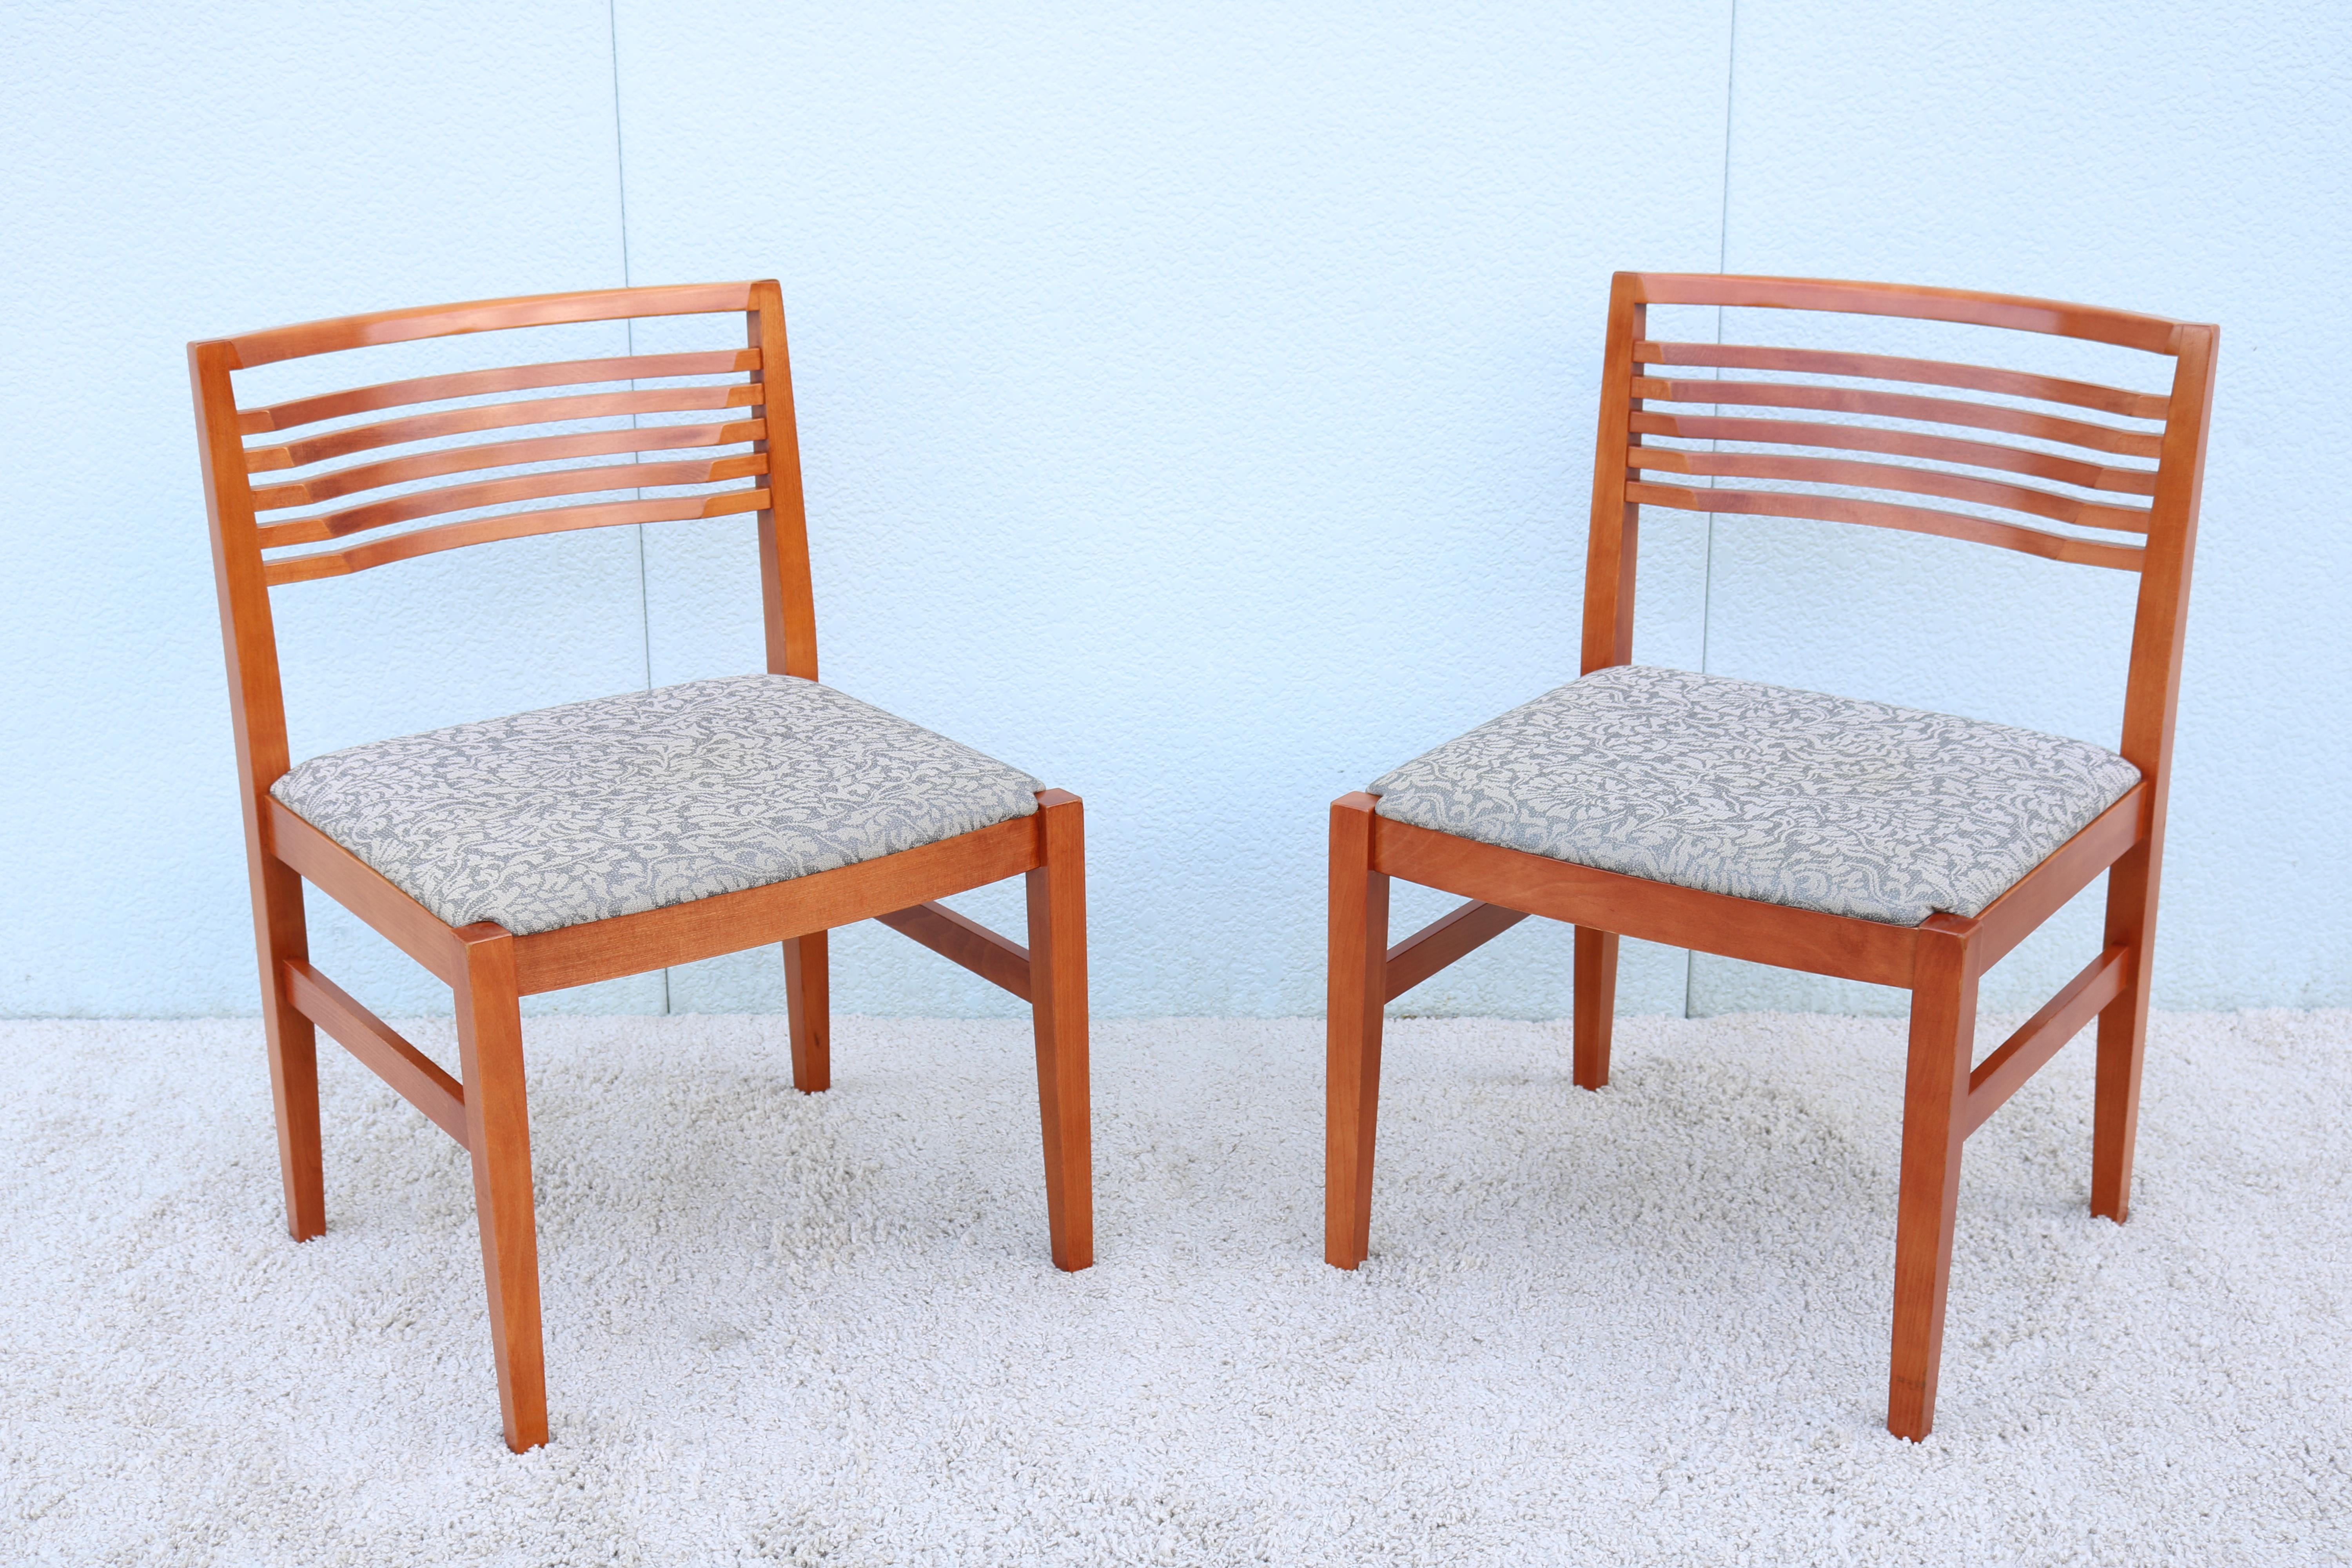 Atemberaubendes Paar authentischer und signierter armloser Ricchio-Stühle von Knoll Studio. 
Diese Stühle gewannen 1991 einen Roscoe Design Award für Linda und Joe Ricchio.
Sie passen gut in Wohnungen, Esszimmer, Empfangsbereiche und private